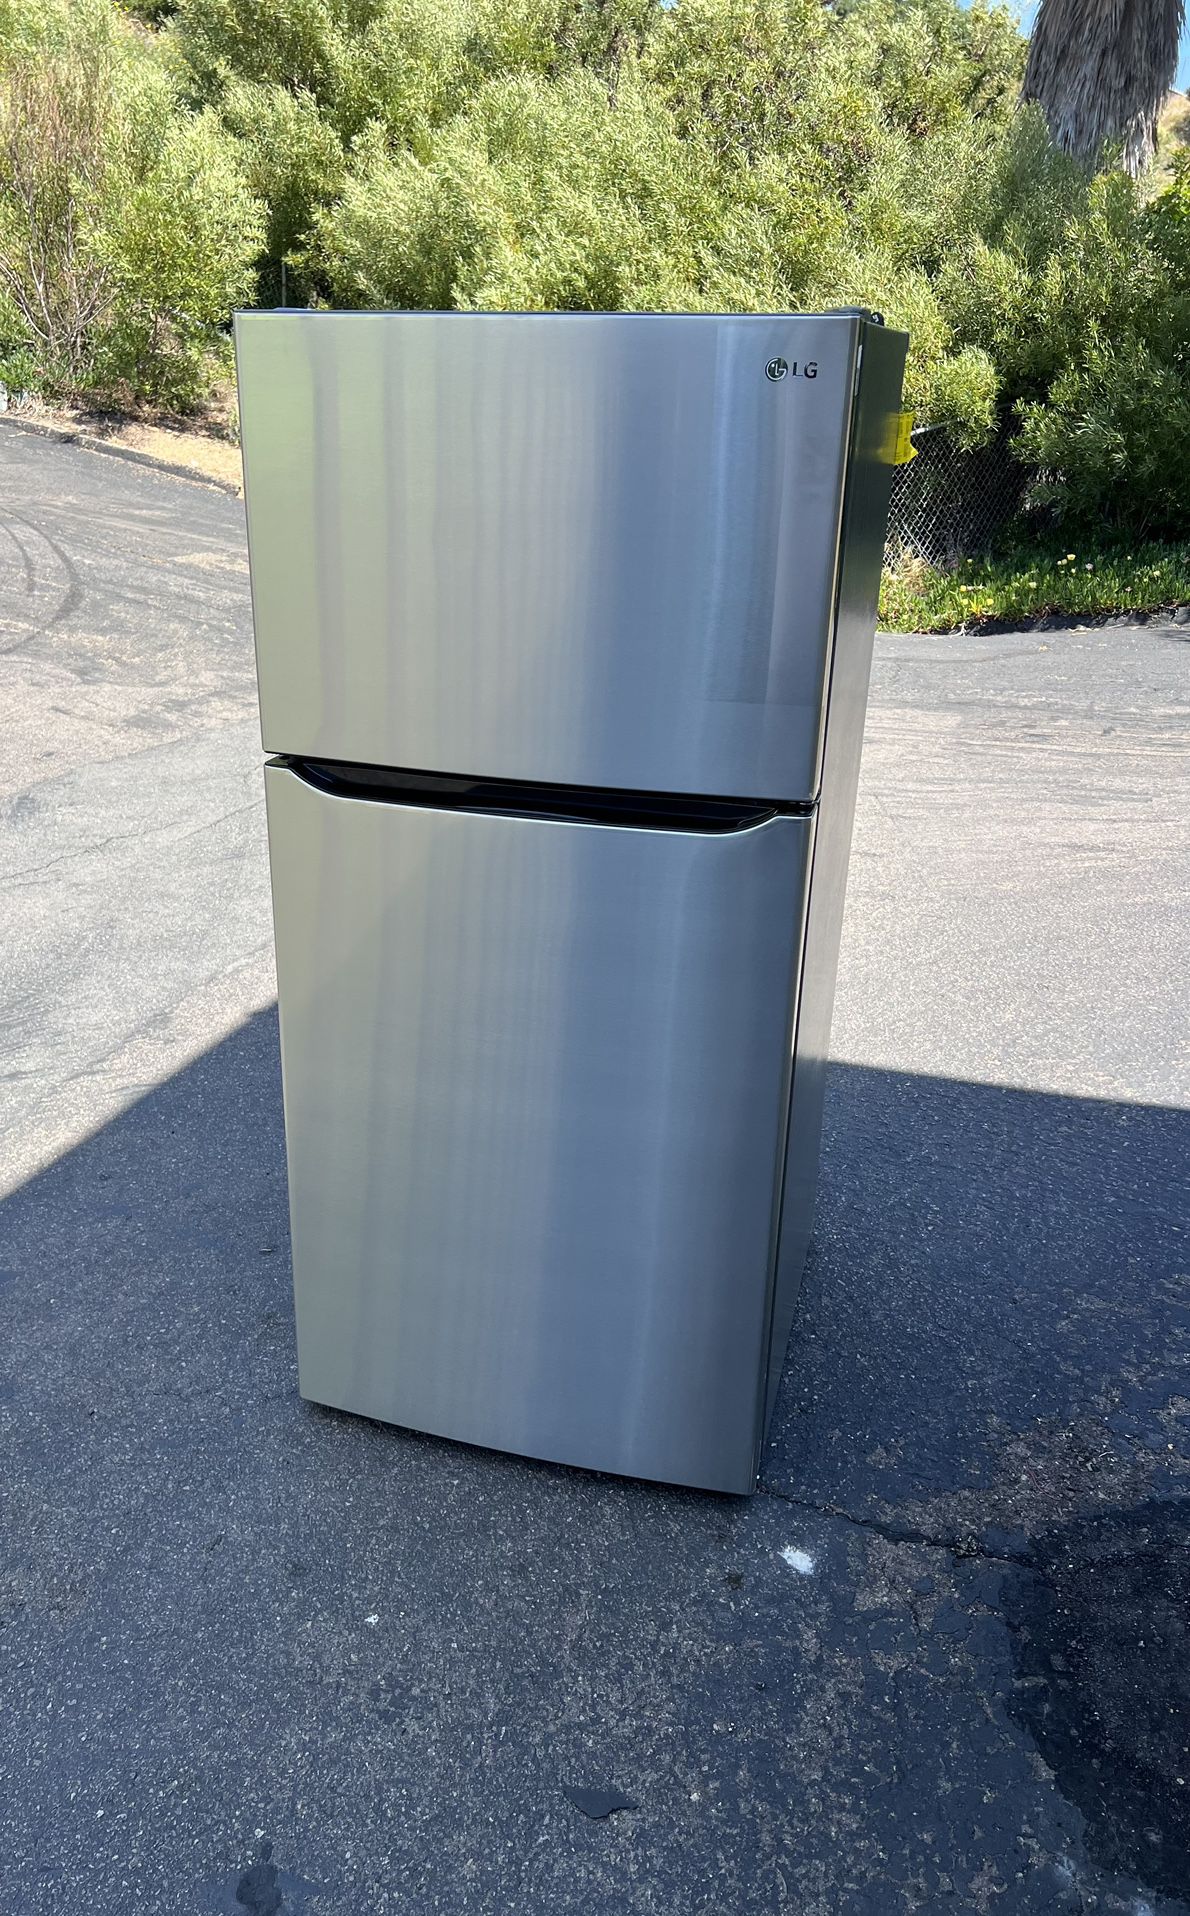 Kitchen/garage Refrigerator (free Local Delivery)